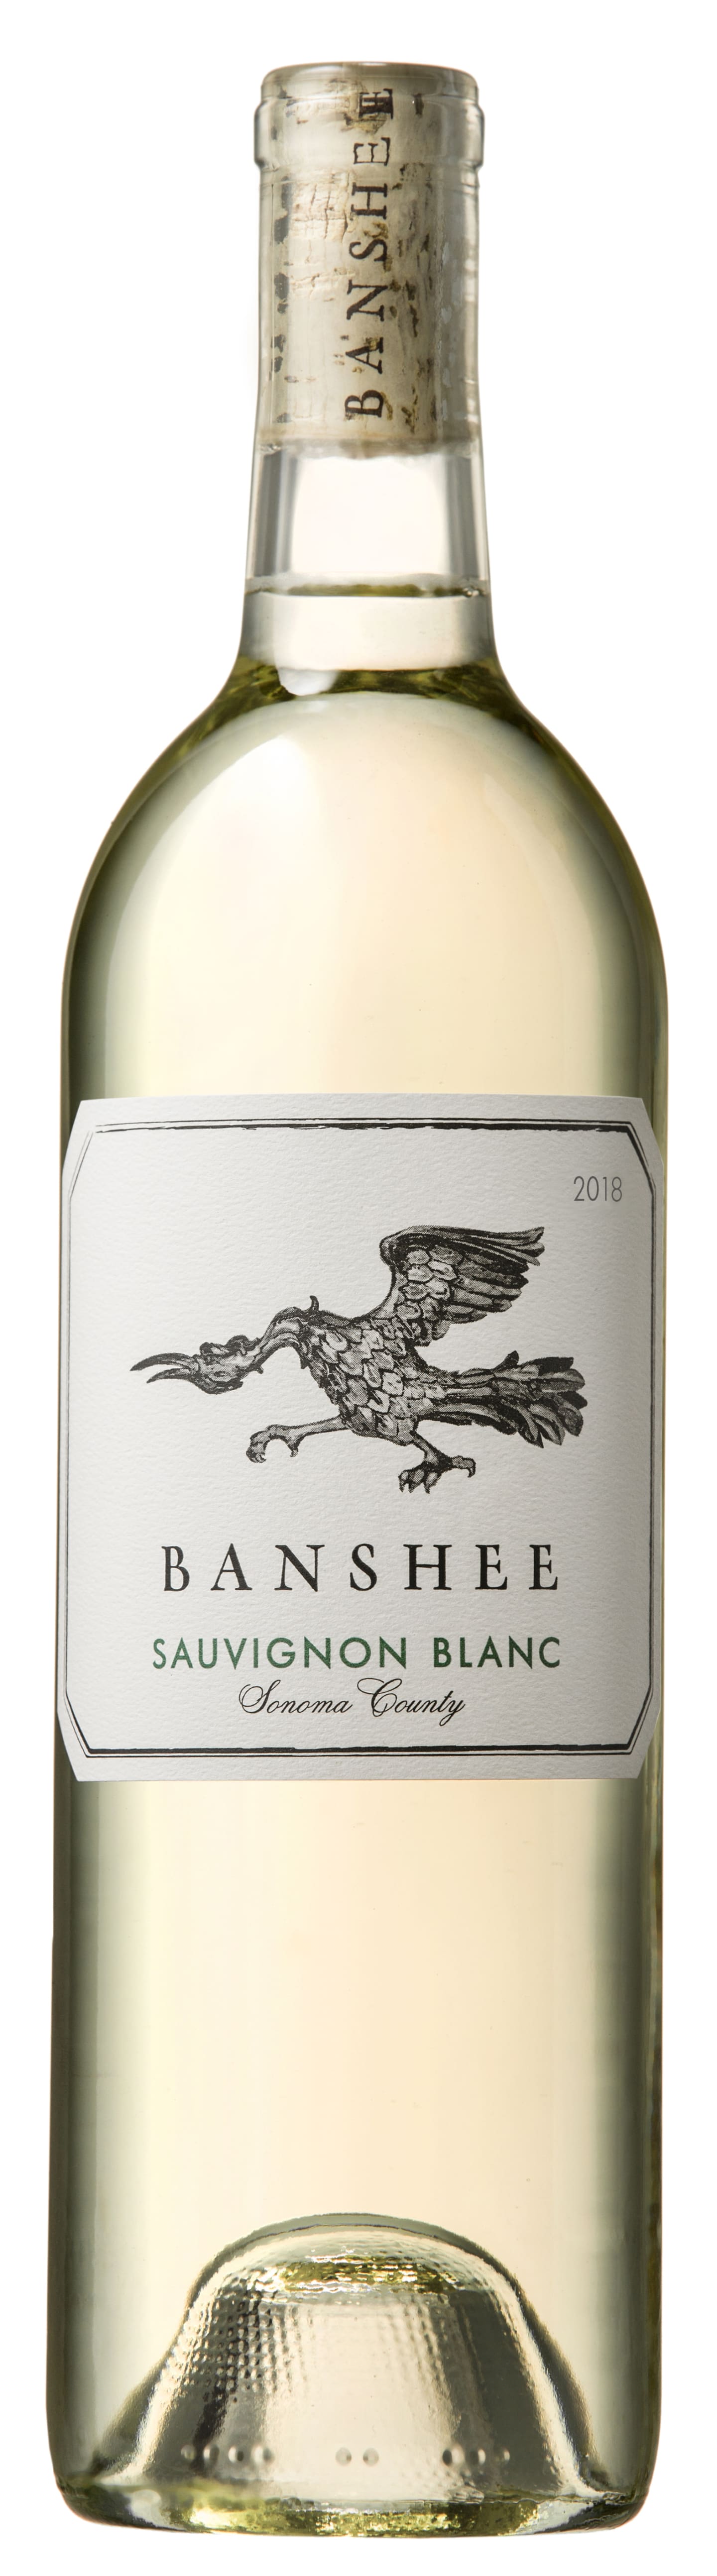 Banshee Sauvignon Blanc 2018